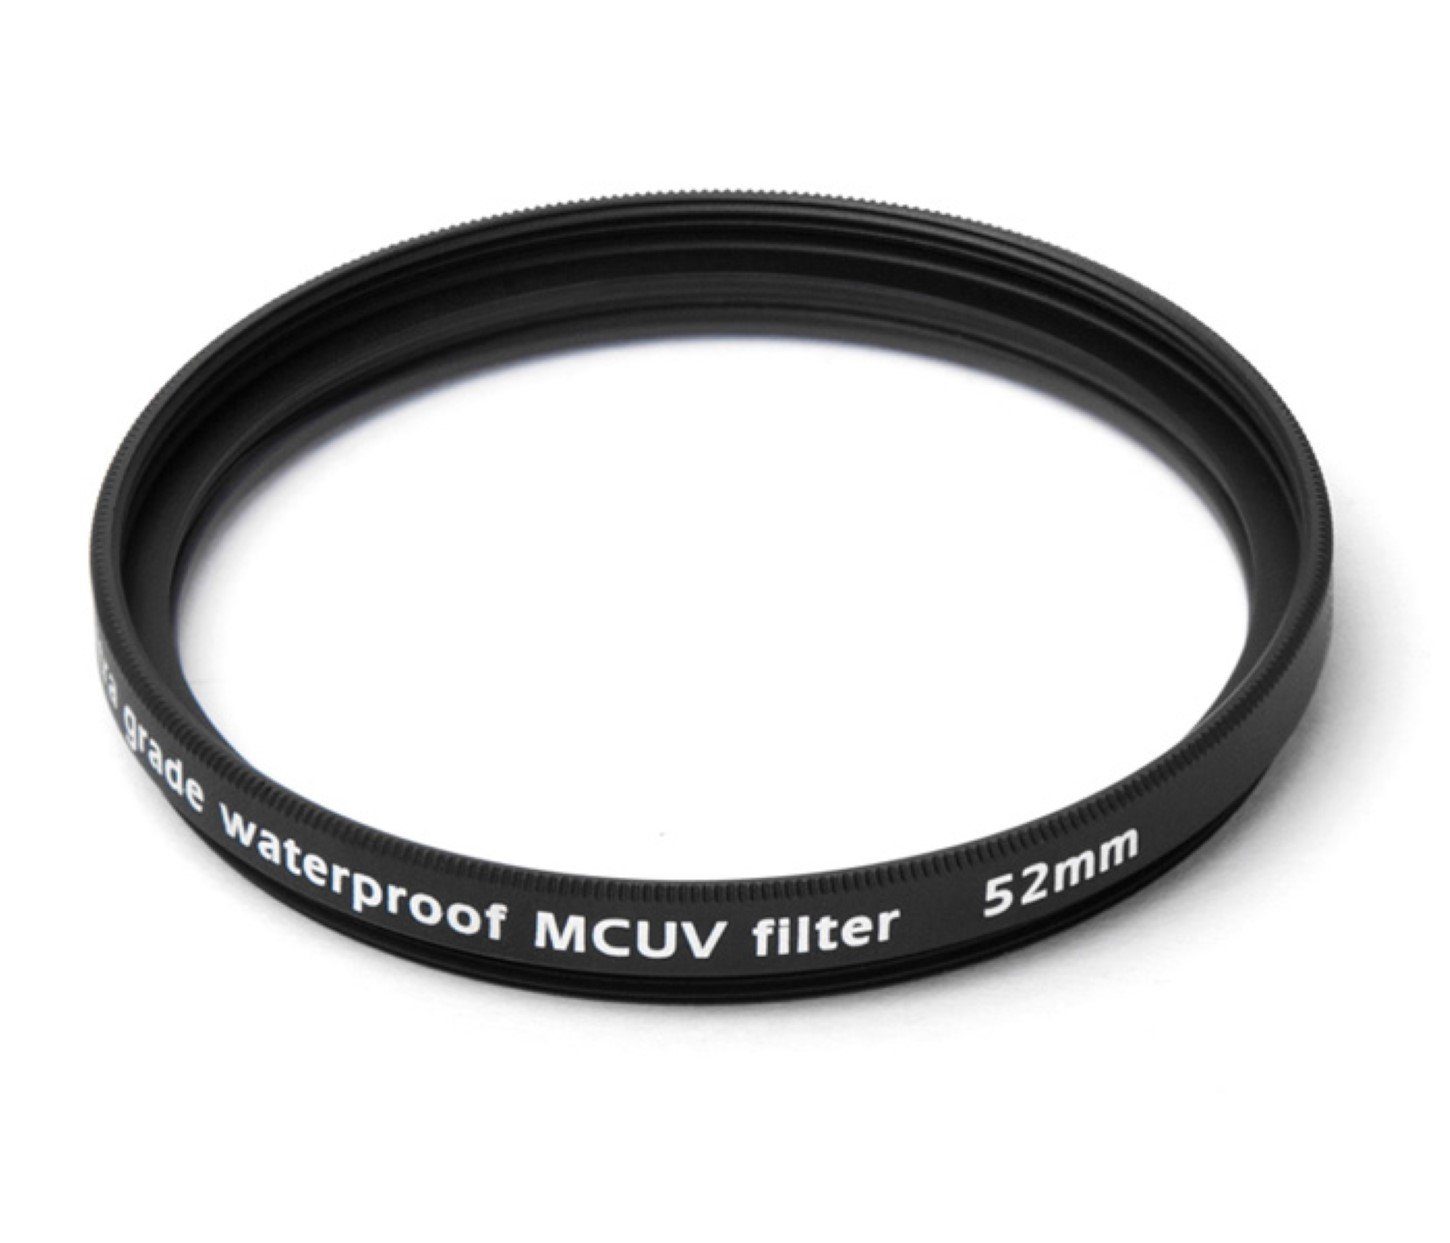 ayex Multicoated UV Filter vergütet mm 52 Foto-UV-Filter wasserfest